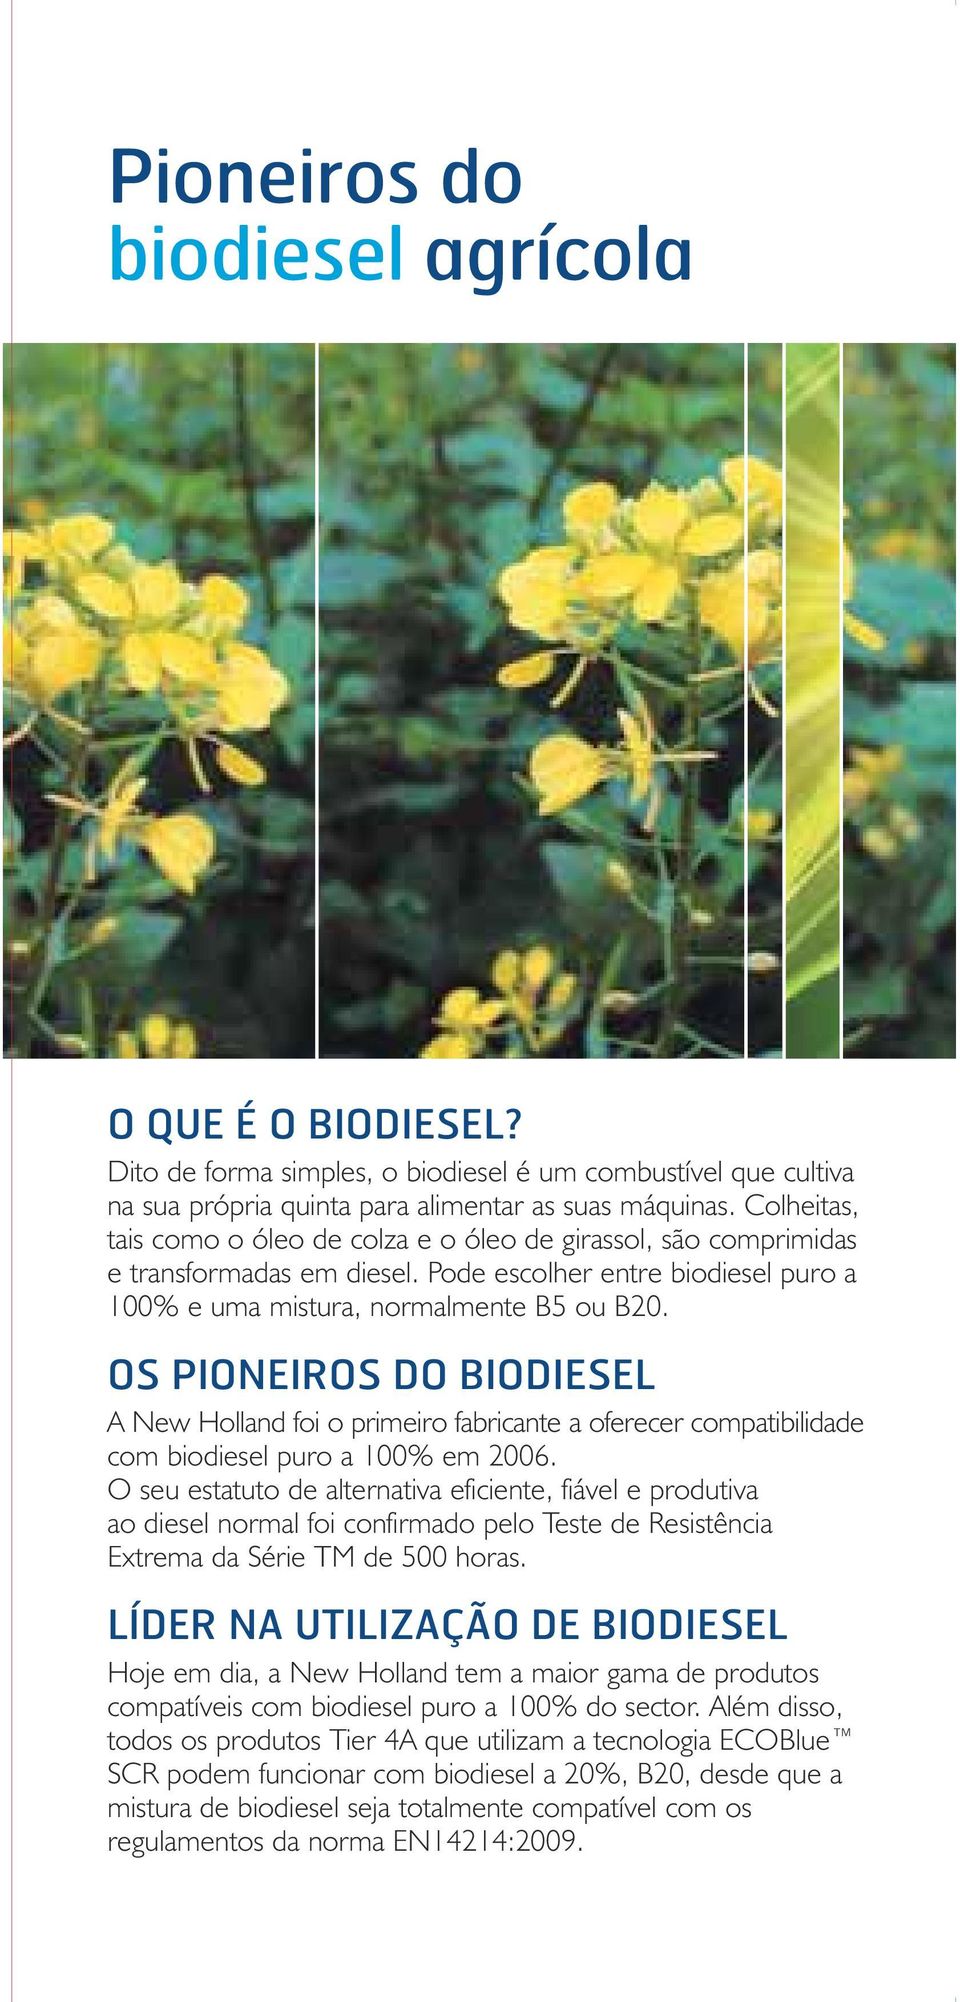 OS PIONEIROS DO BIODIESEL A New Holland foi o primeiro fabricante a oferecer compatibilidade com biodiesel puro a 100% em 2006.